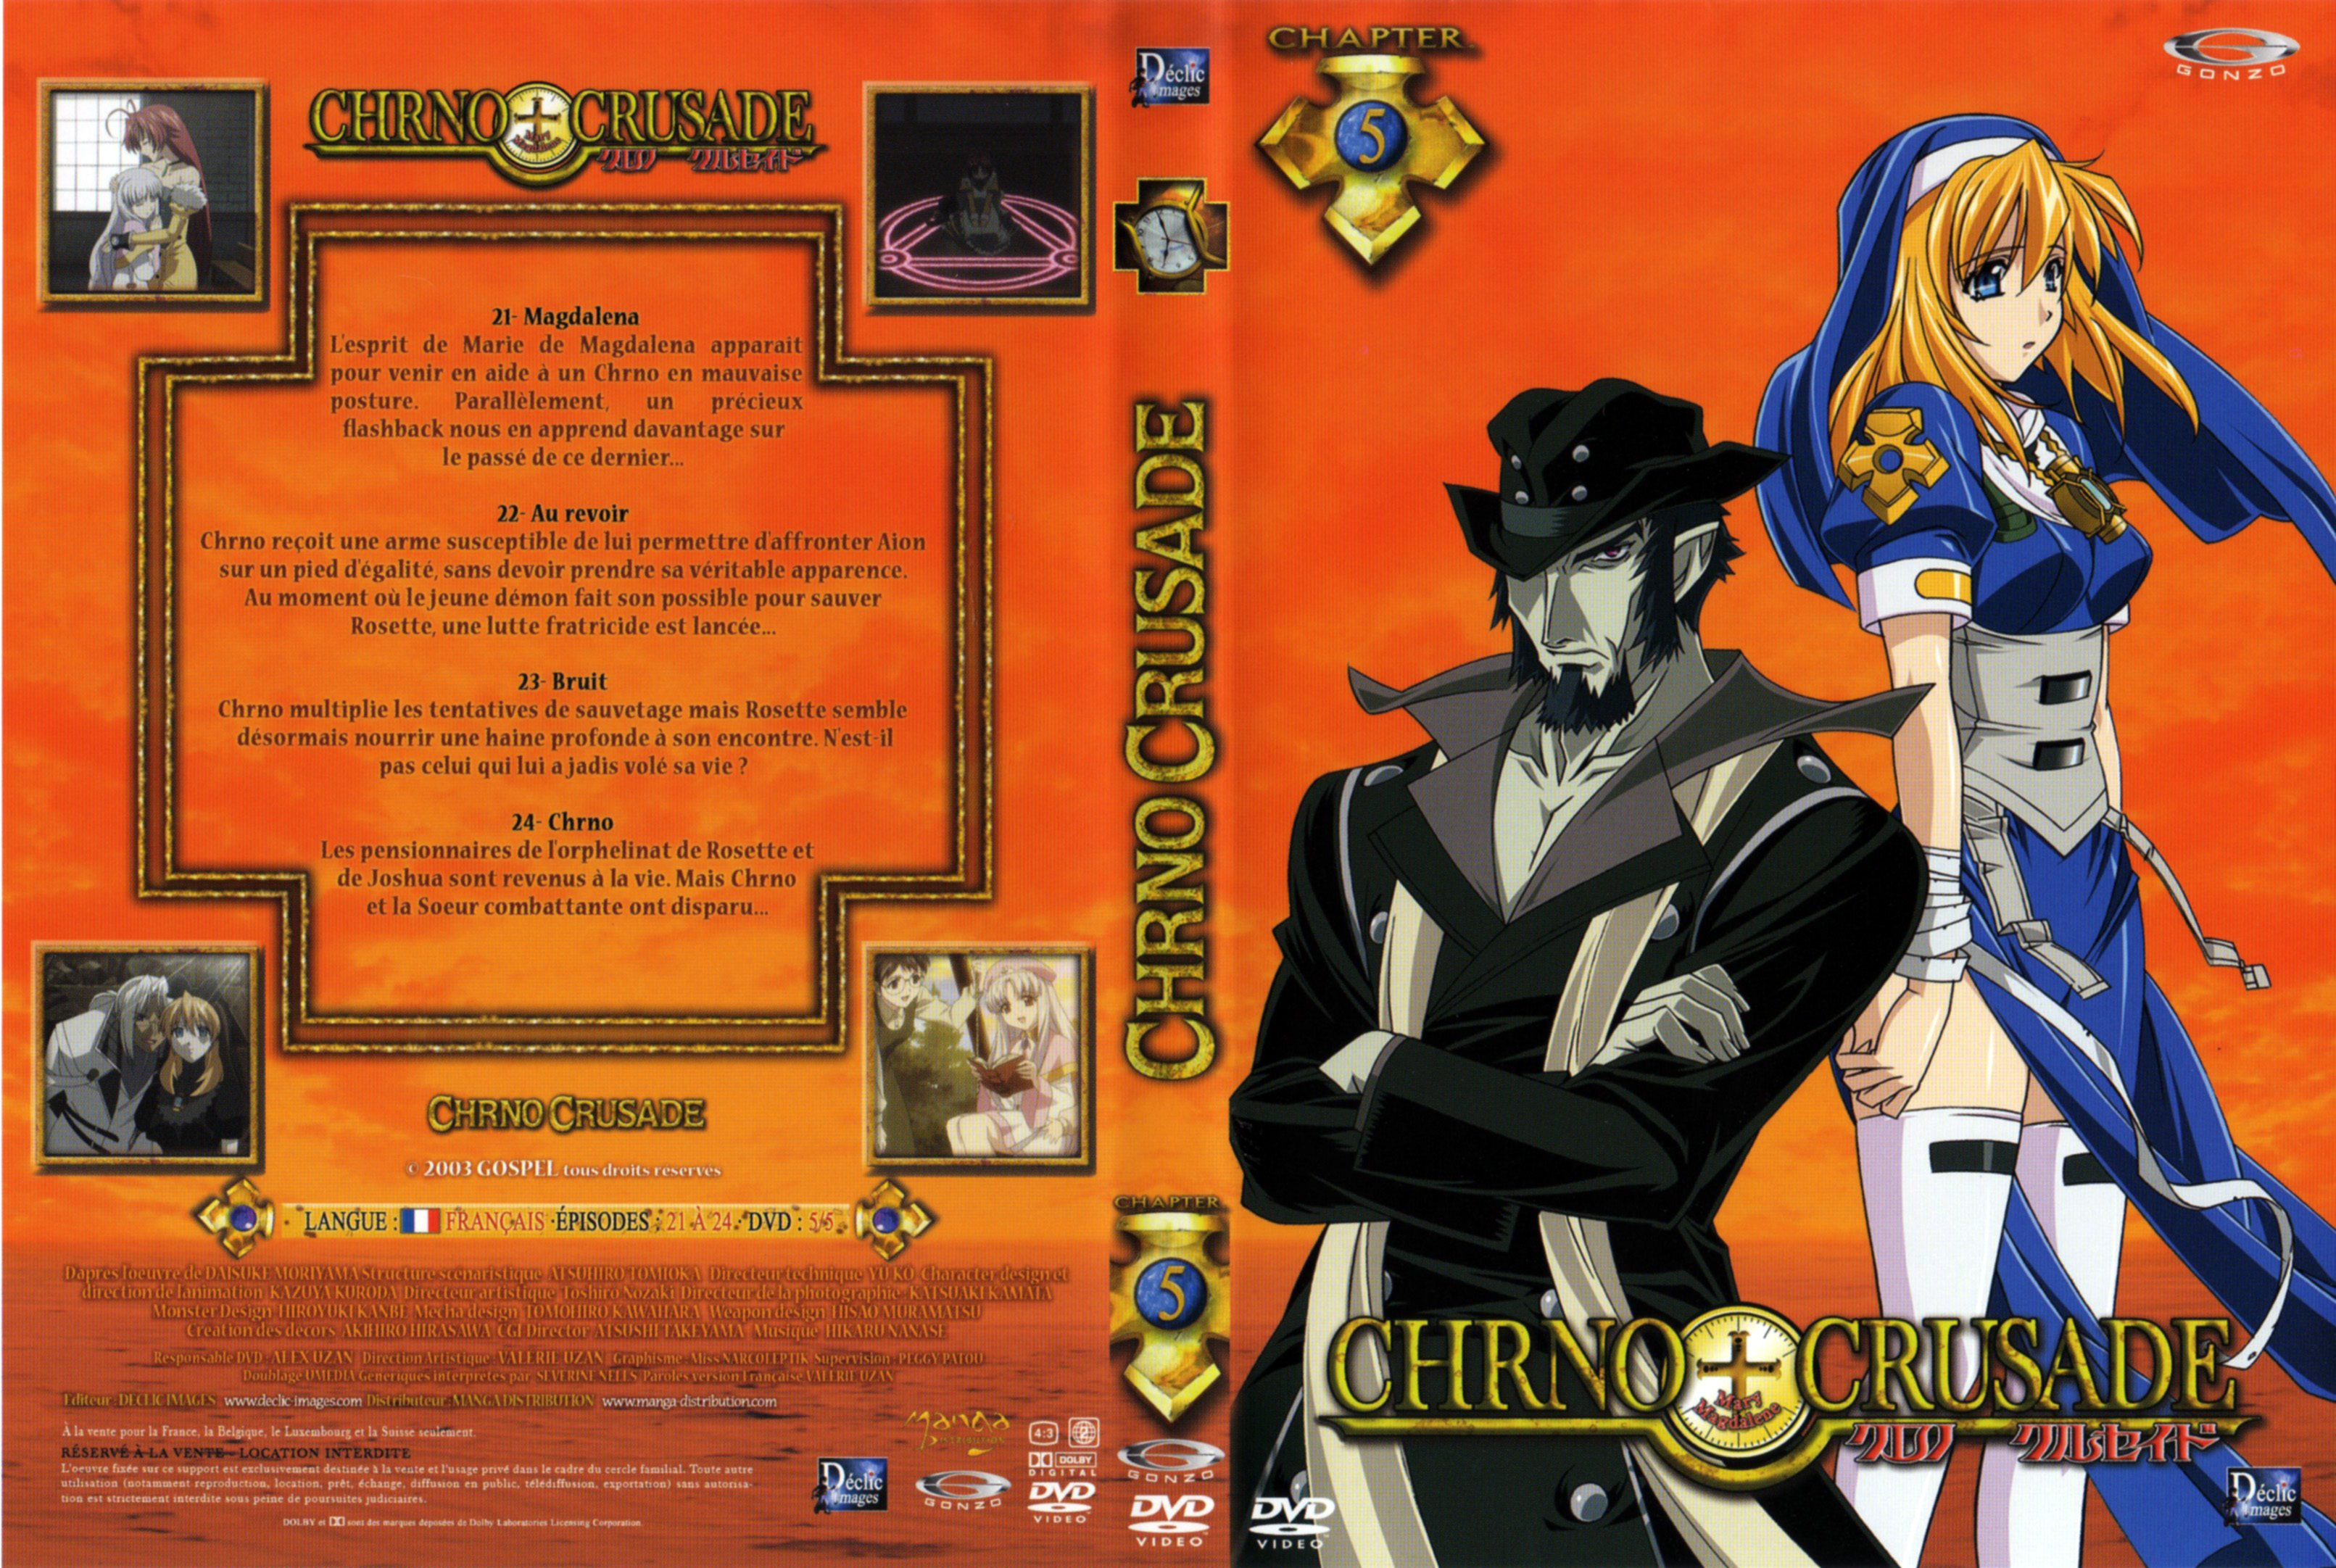 Jaquette DVD Chrno Crusade vol 5 v2